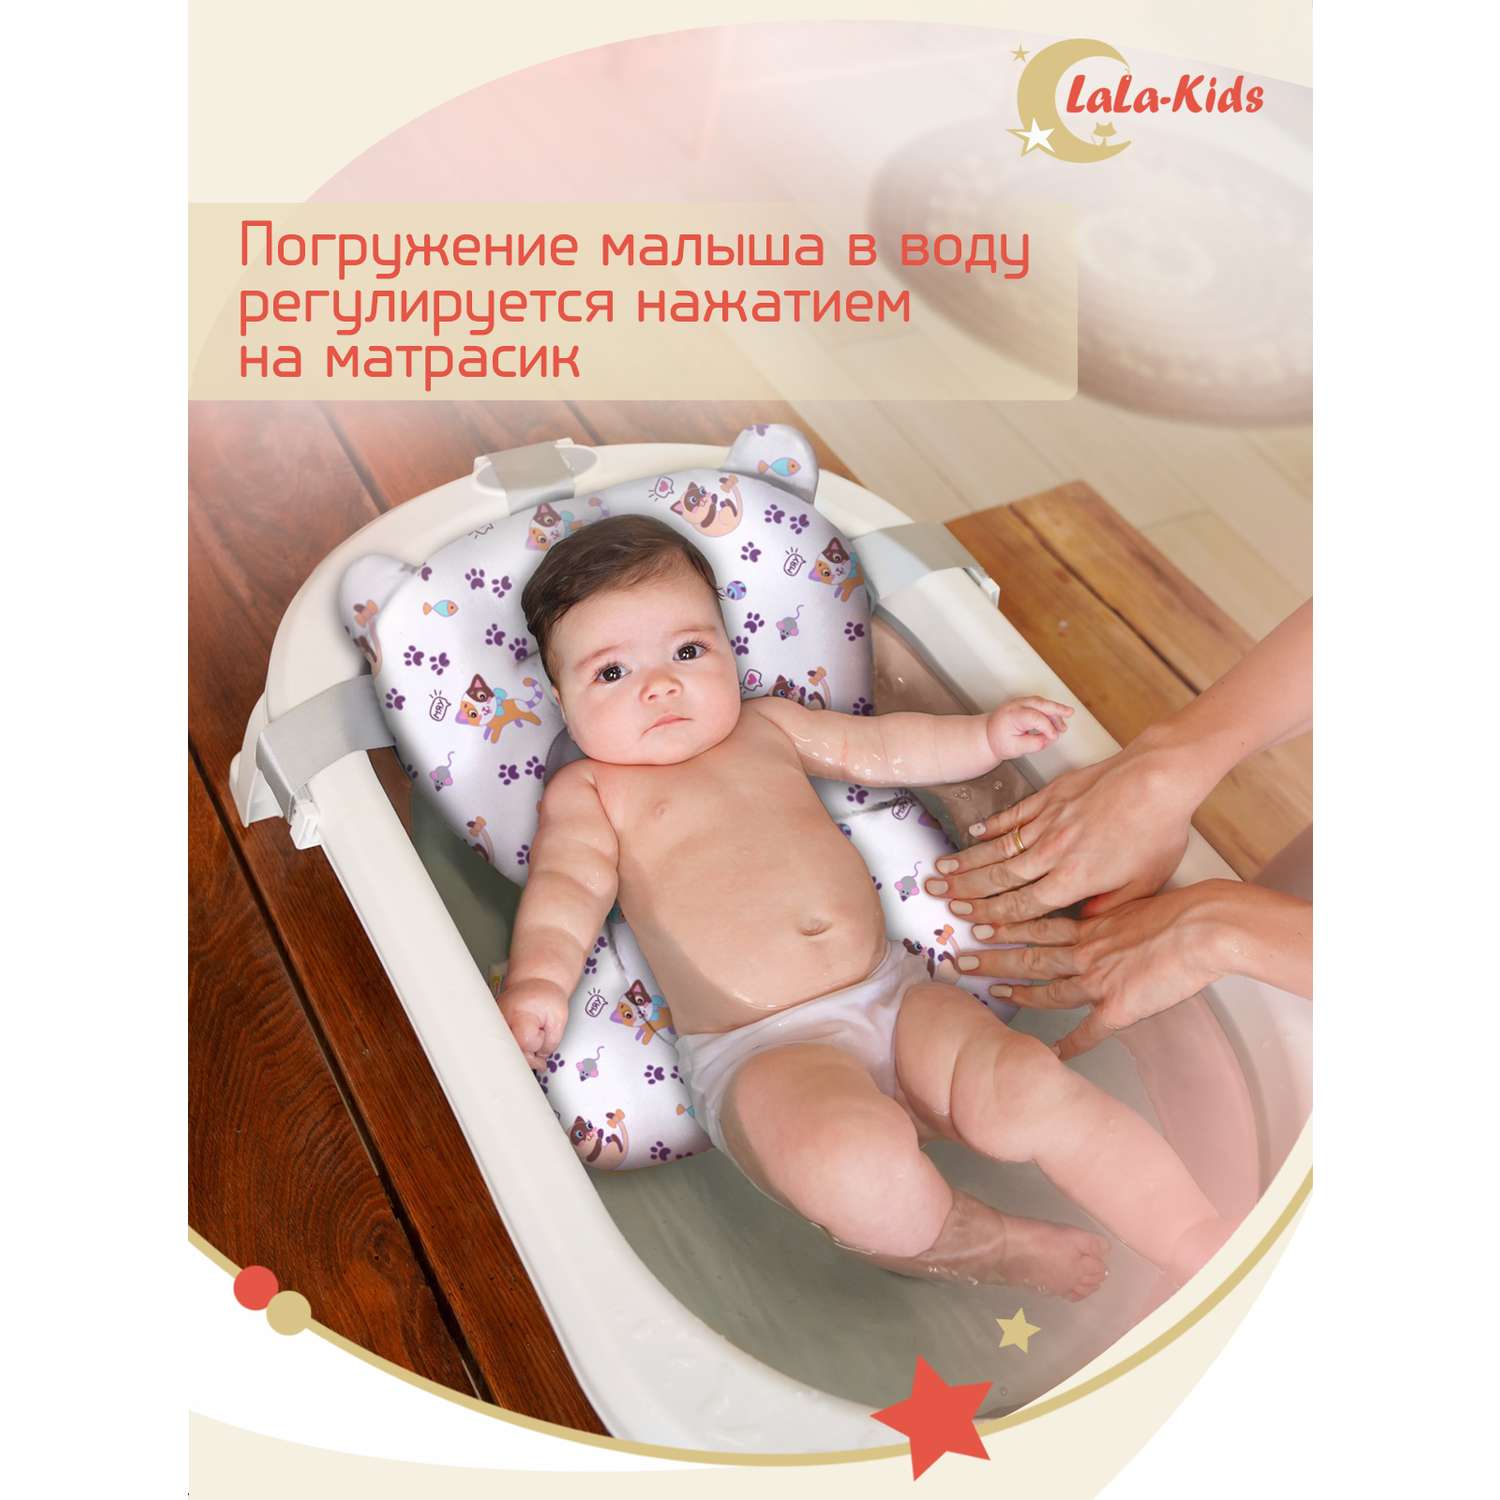 Детская ванночка с термометром LaLa-Kids складная для купания новорожденных с матрасиком в комплекте - фото 18